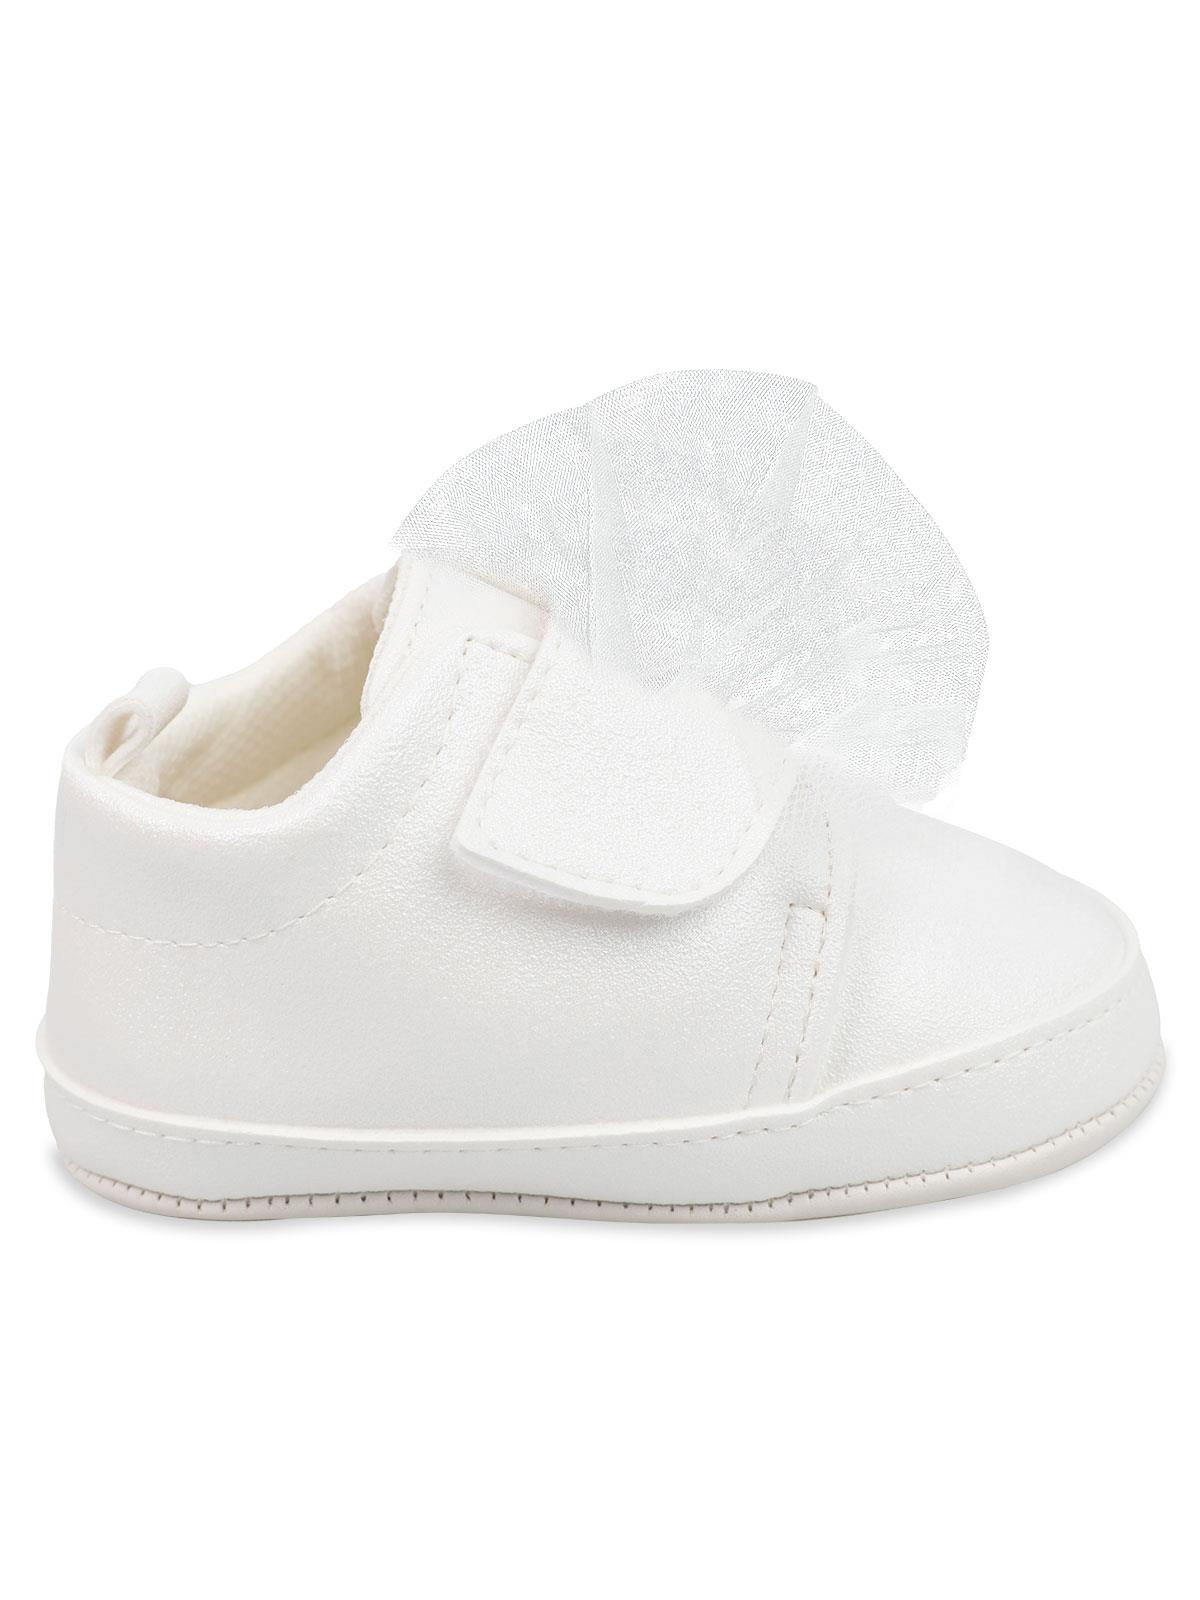 Civil Baby Kız Bebek Patik Ayakkabı 17-19 Numara Ekru